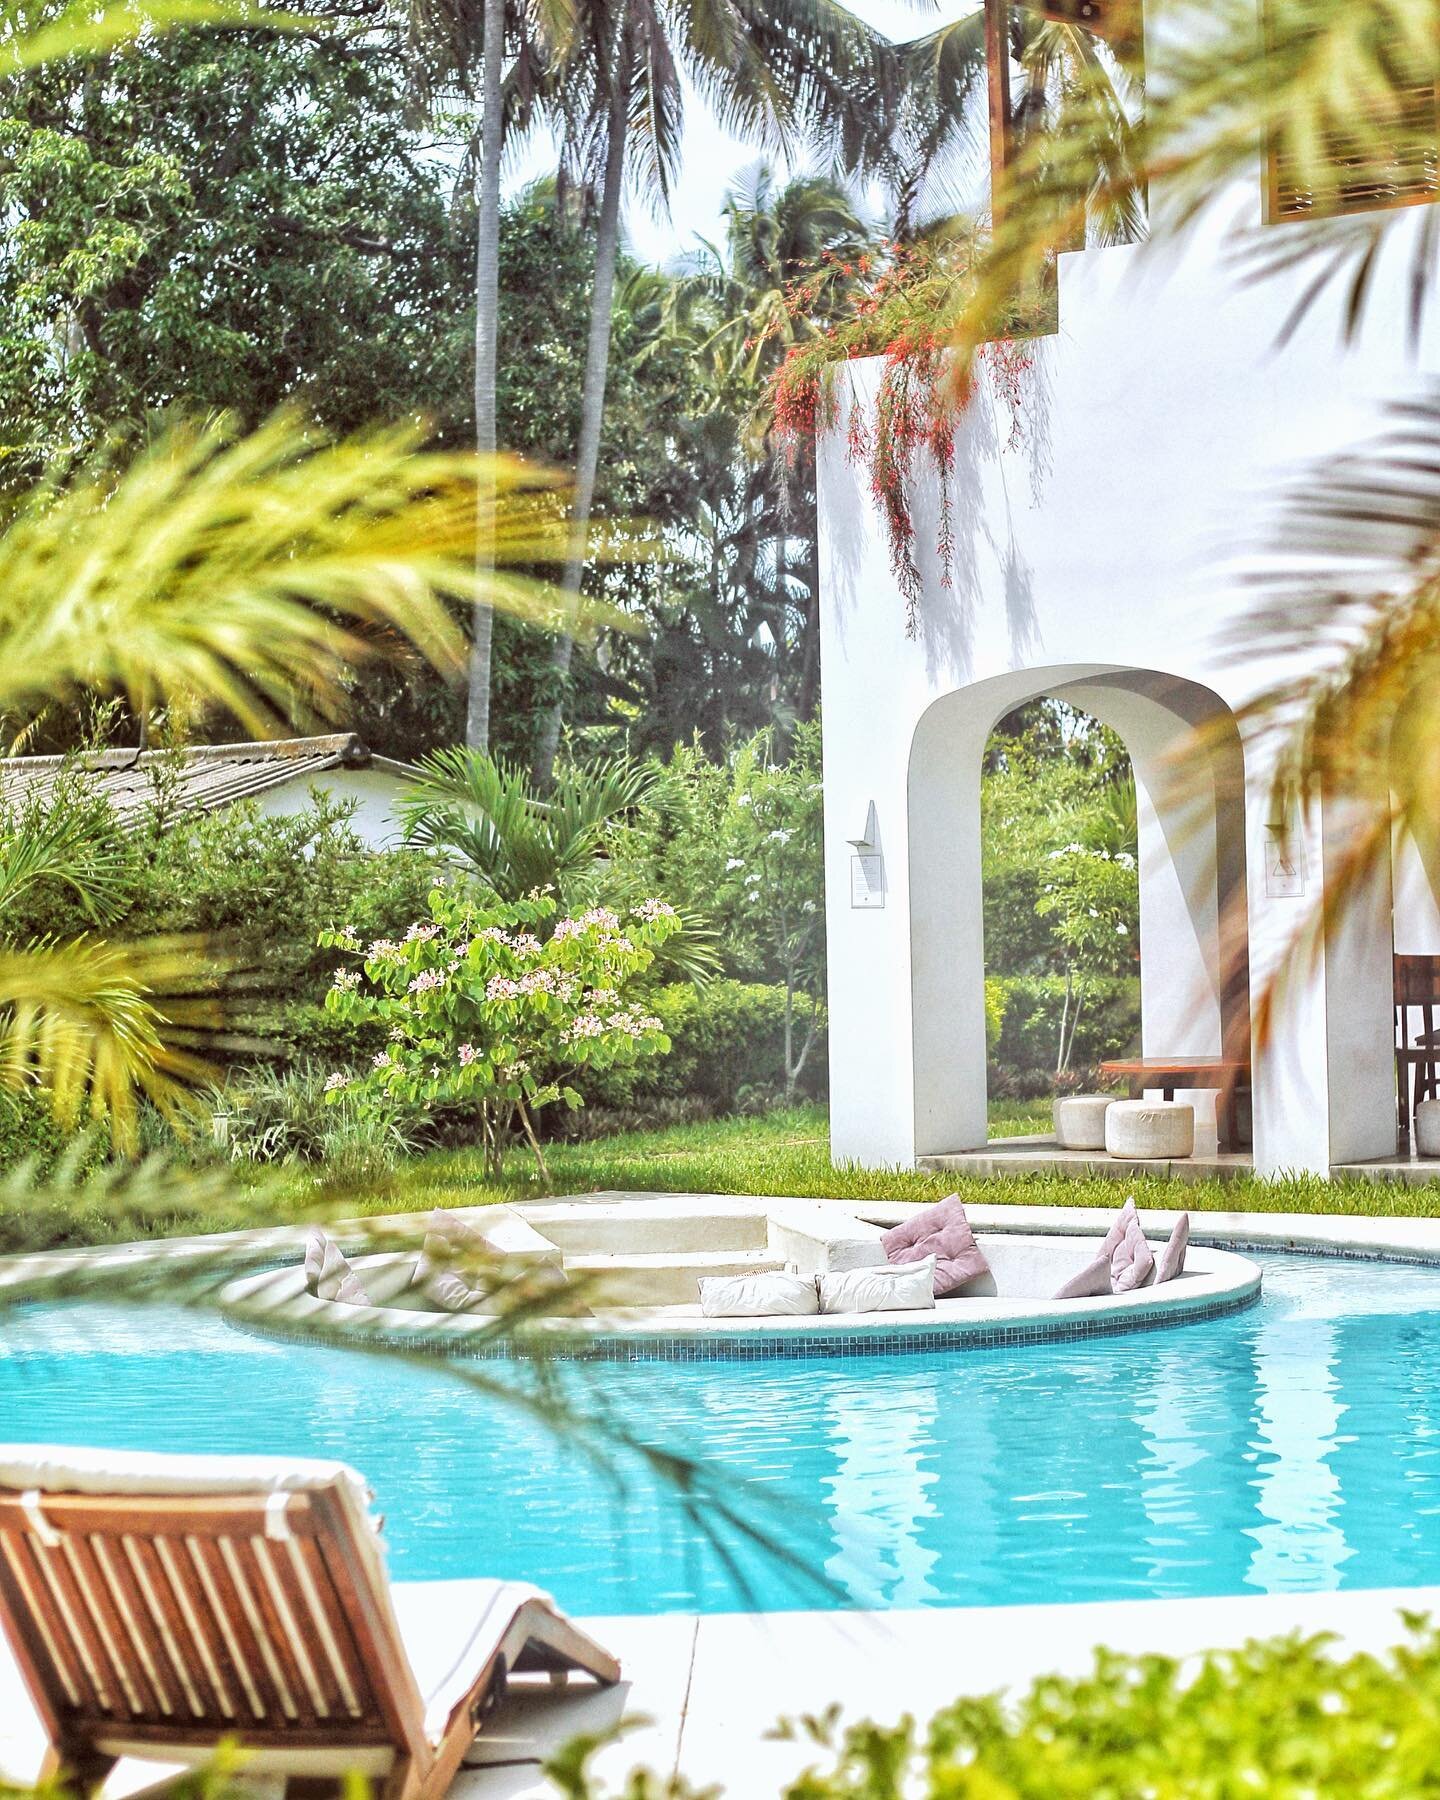 Garten Villas is the perfect vacation getaway. Offering unique spaces for the most delightful pet friendly hotel experience everyone will enjoy. 

#playaelzonte #elsalvador #elsalvadorimpresionante #elzontebeach #luxuryhotel #hotelboutique #privateho